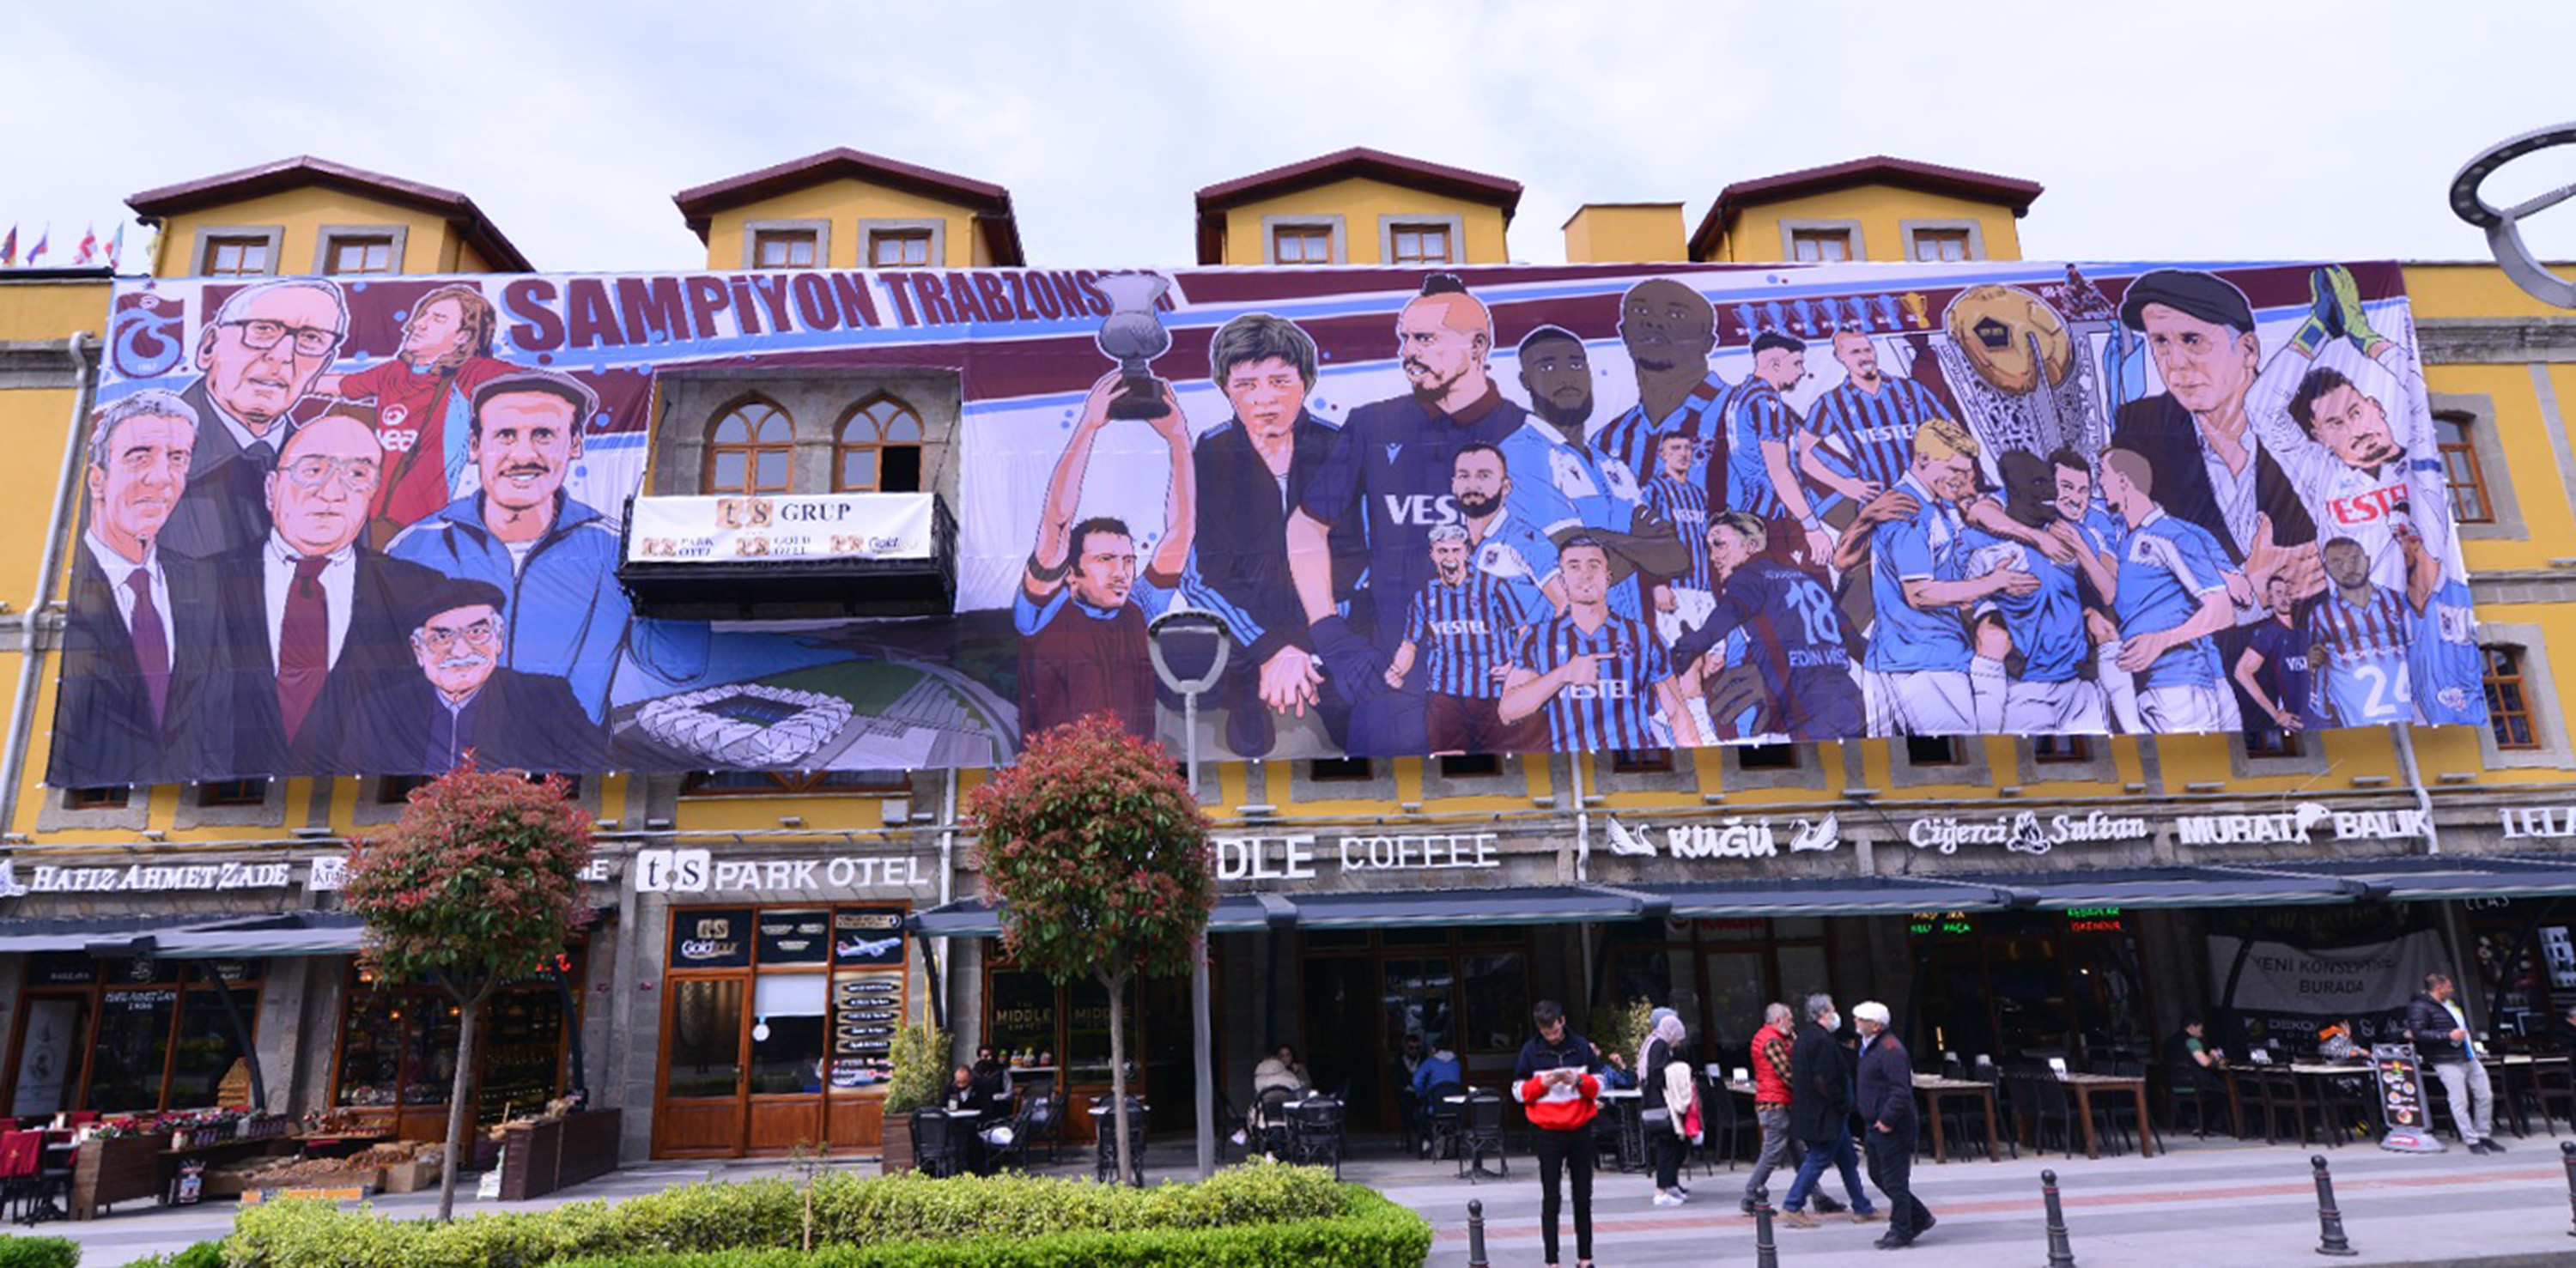 Süper Lig’in zirvesindeki Trabzonspor’un taraftarlarını yaklaşan şampiyonluğun heyecanı sardı. Bordo mavili takım şampiyonluğu ilan etmeden önce hazırlıklara başlayan taraftarlar, kent meydanını bayrak ve afişlerle donattı. Önceki gün kent merkezinde bir otelin ön cephesine asılan 350 metrekarelik Trabzonspor afişi, bordo mavili taraftarları hayran bıraktı.